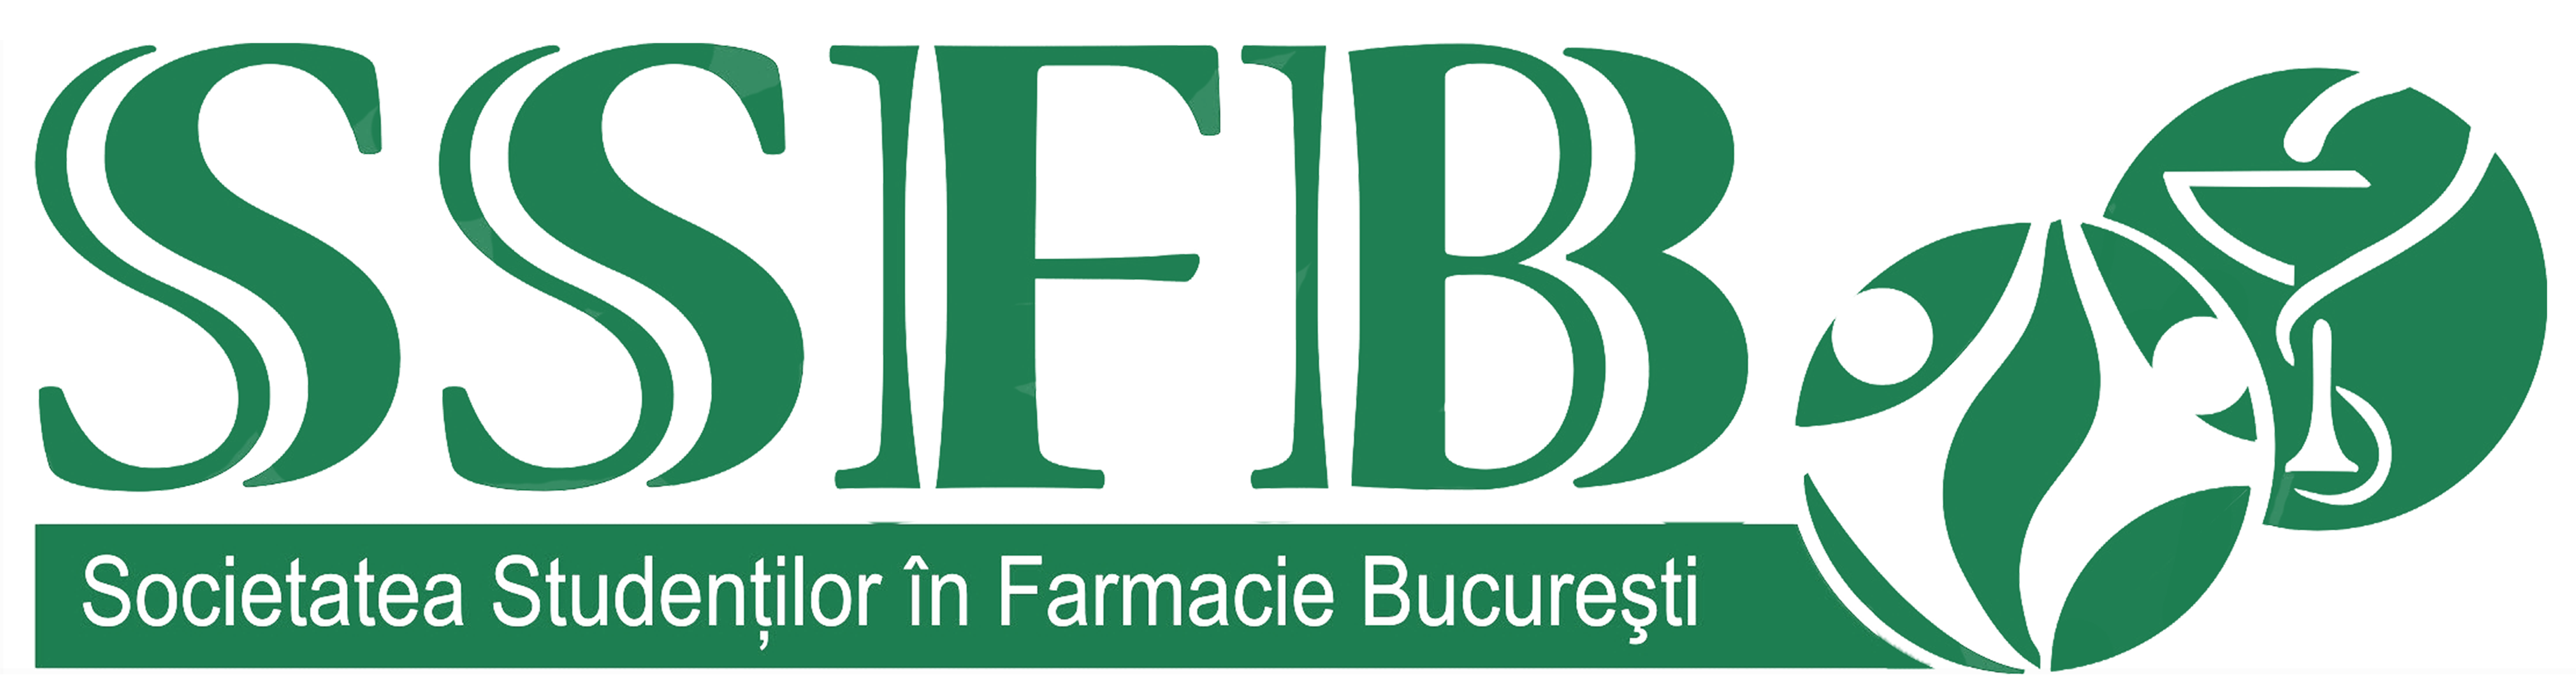 Societatea Studentilor in Farmacie Bucuresti SSFB logo